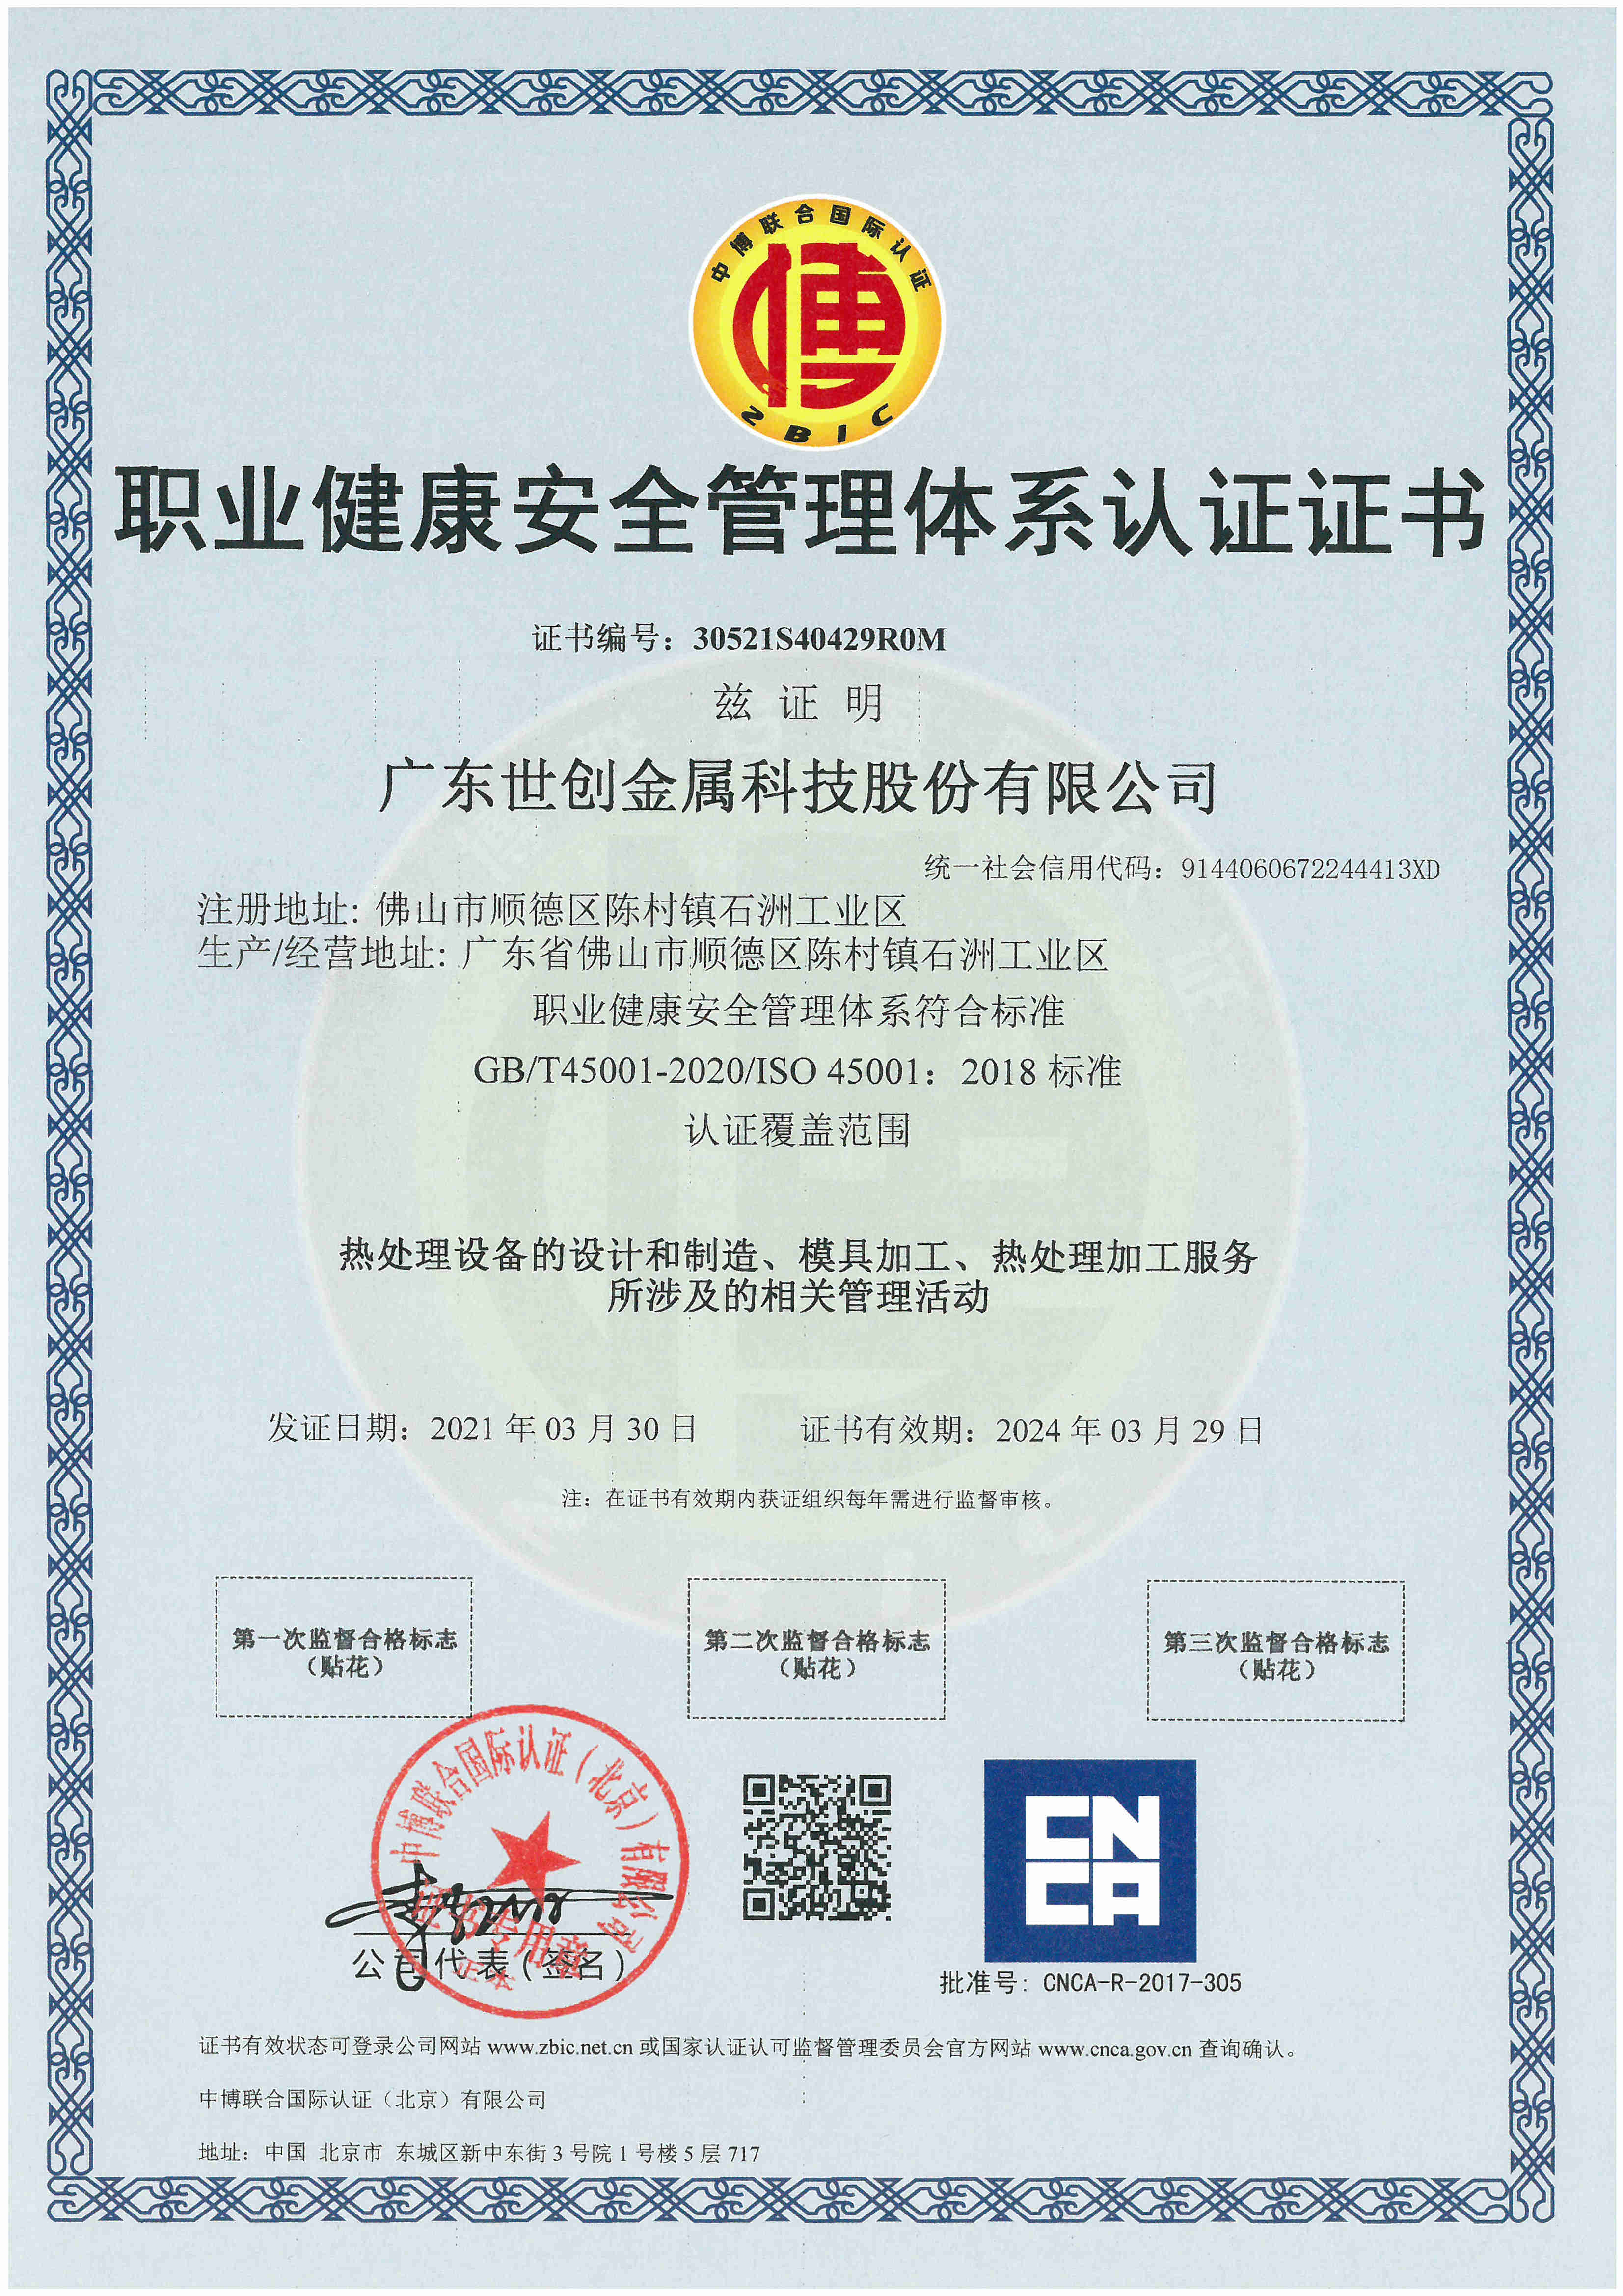 Strong Metal mendapat sertifikat ISO45001:2018 oleh CNCA